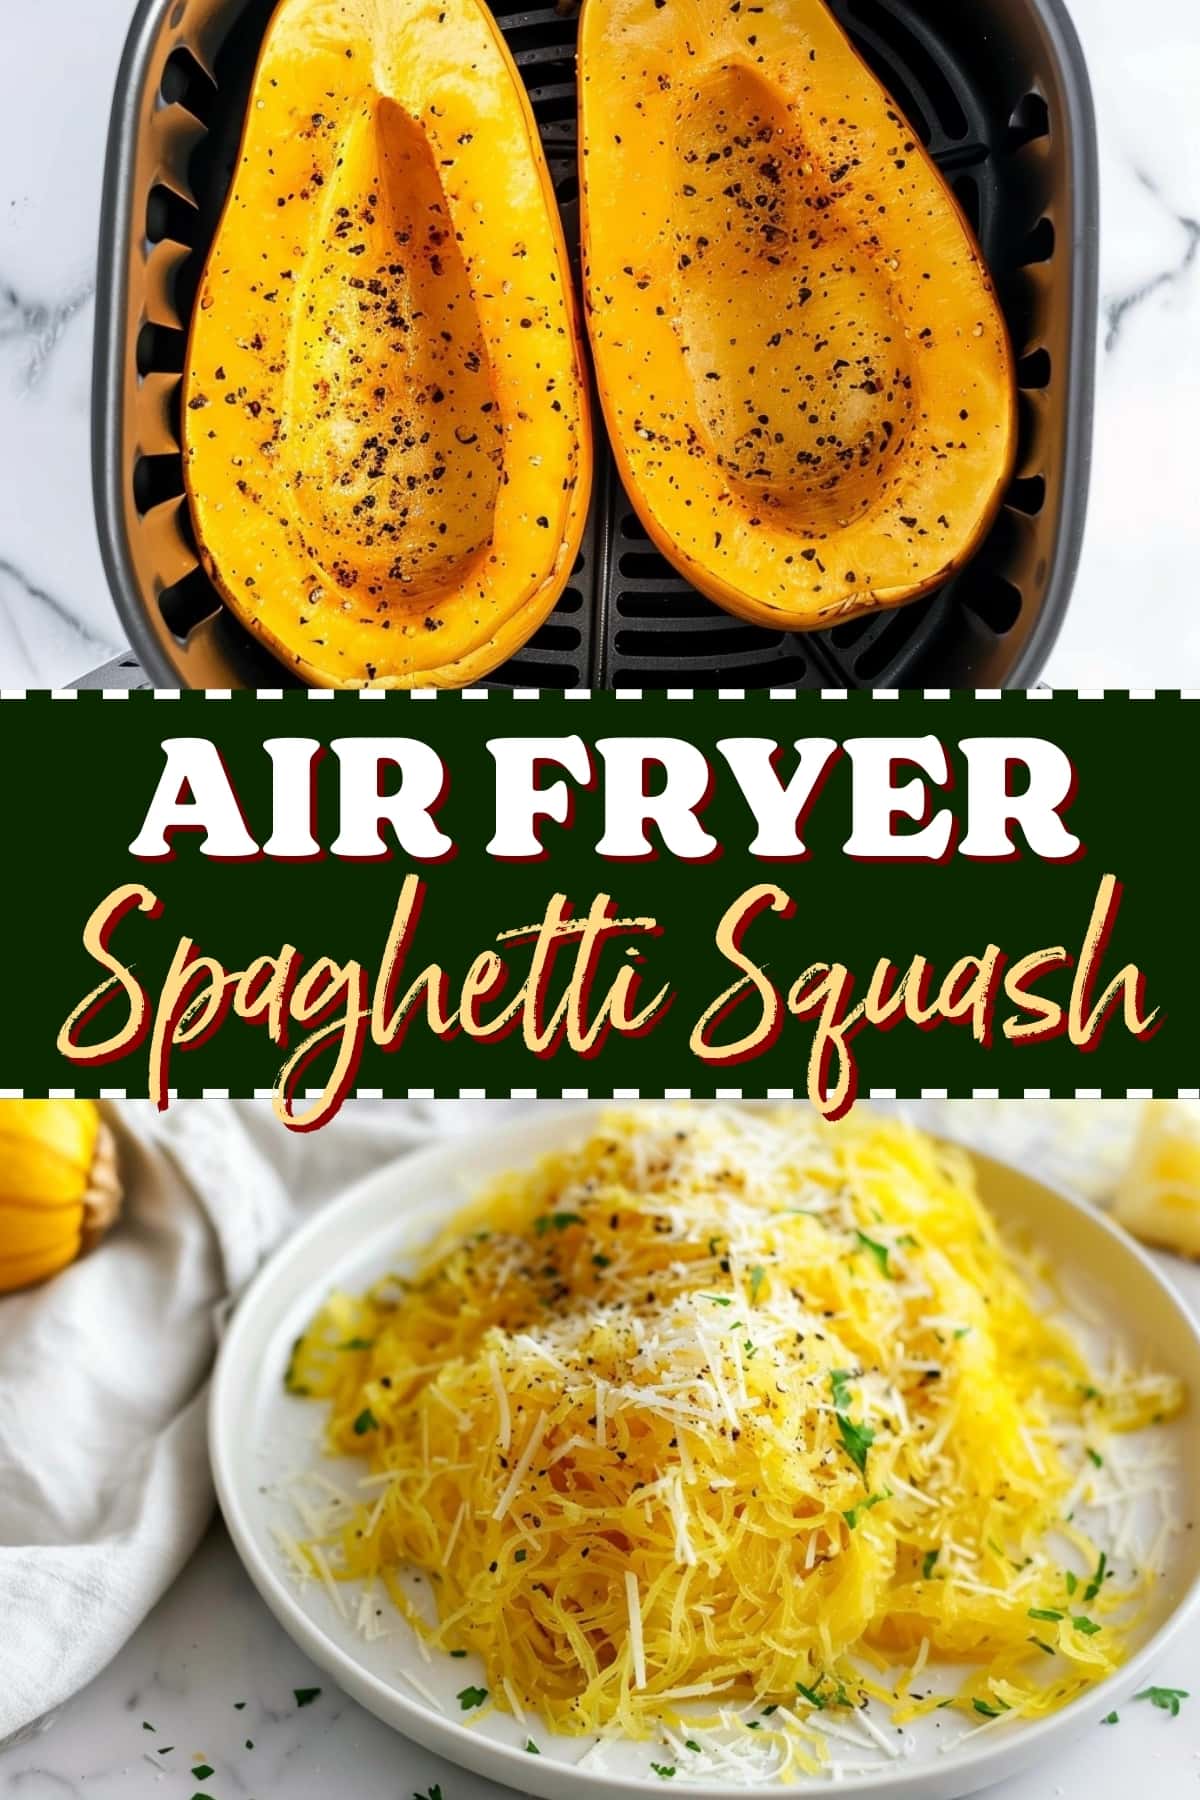 Air fryer spaghetti squash.